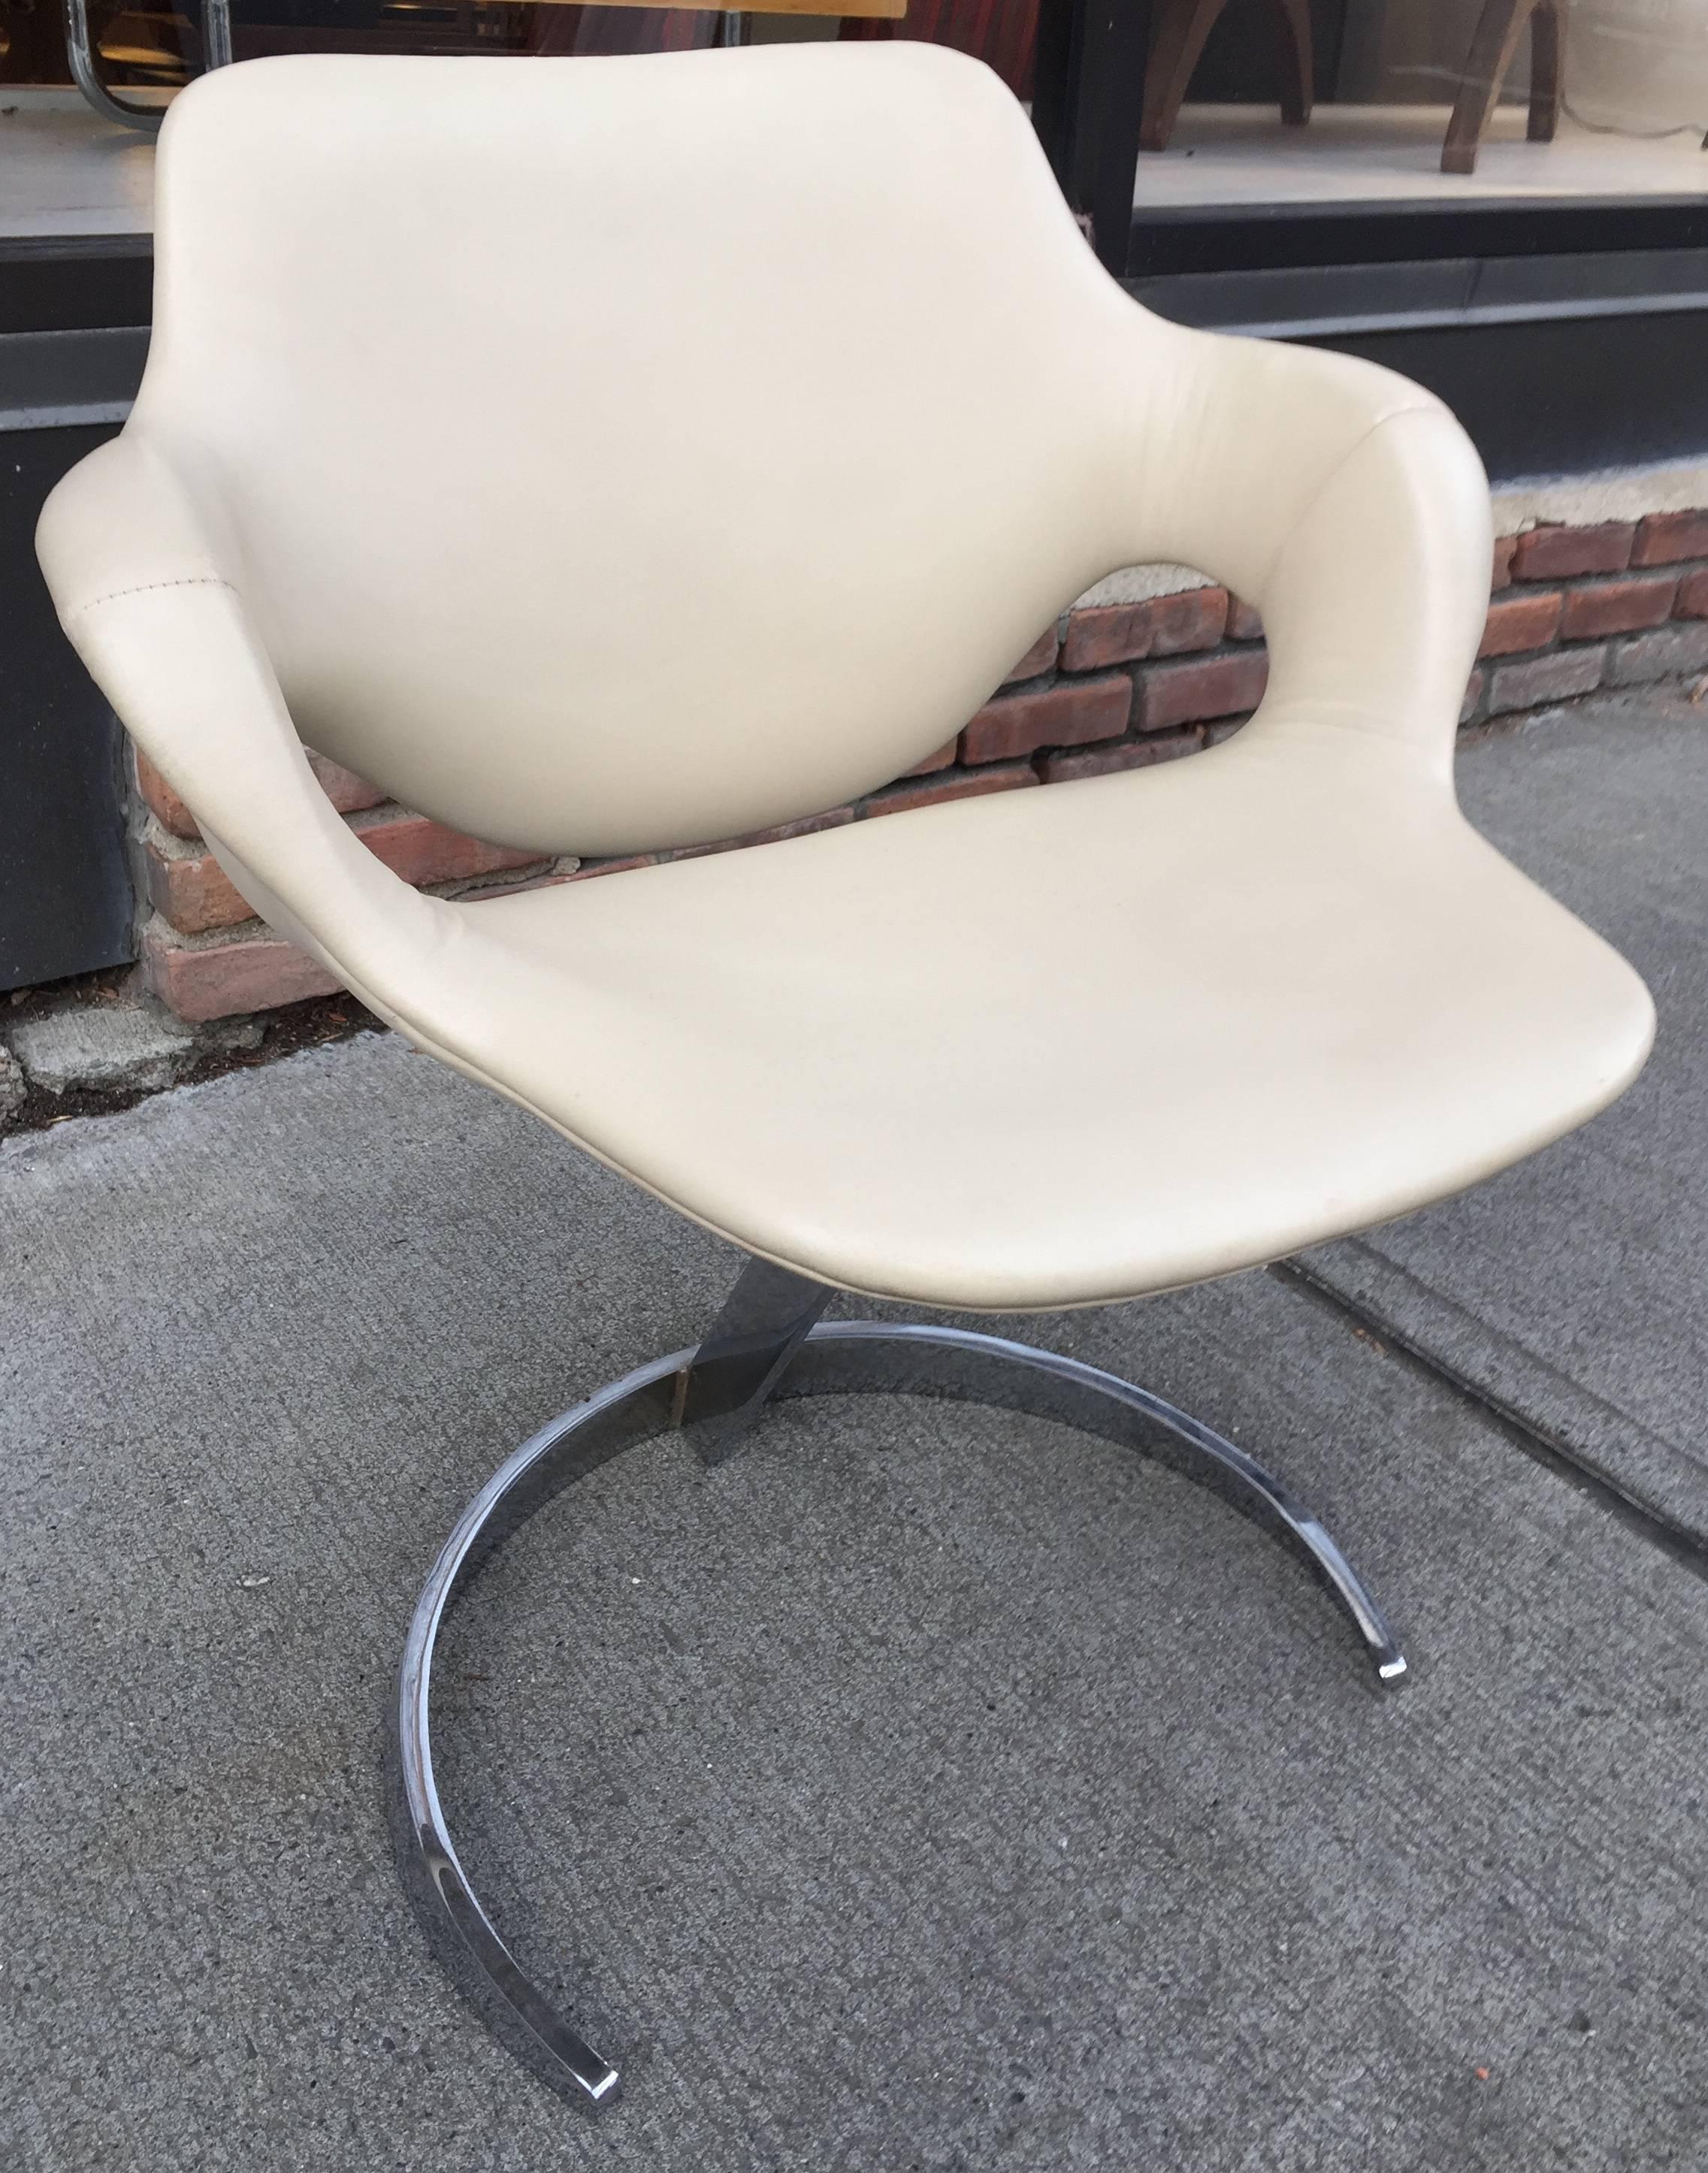 Spage Alter verchromtem Stahl und Creme skai gepolsterten Stuhl. Ebenso bequem wie schick.